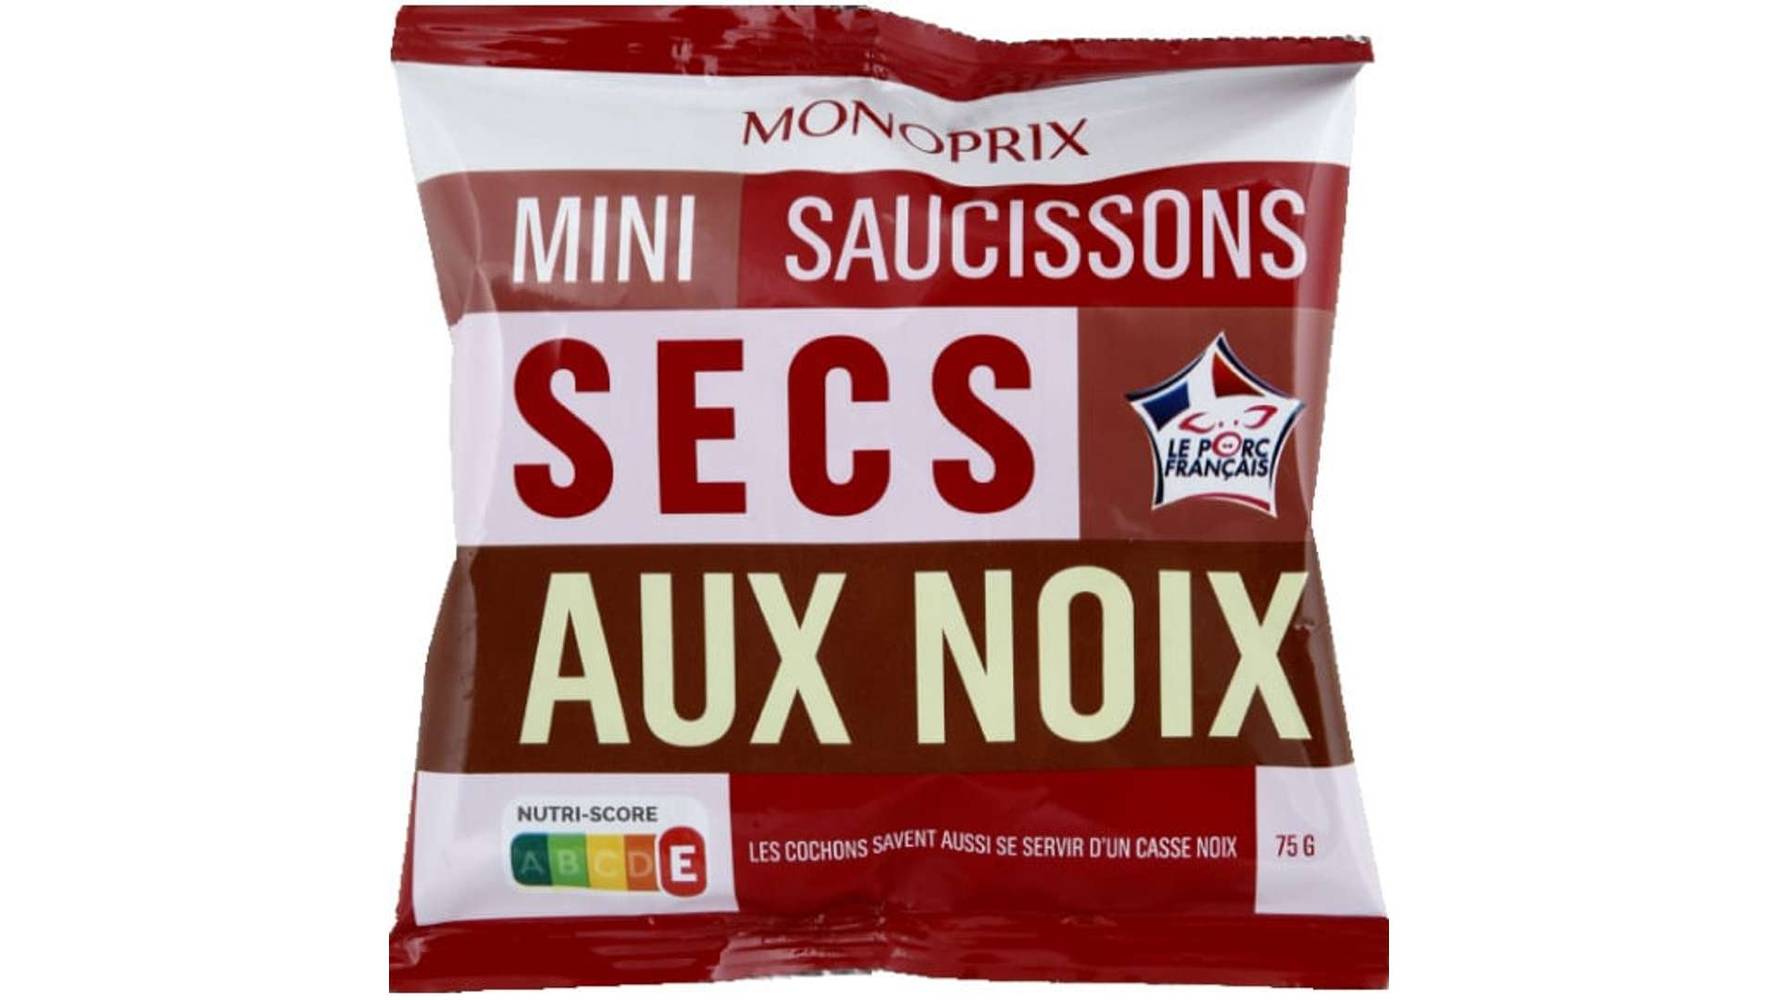 Monoprix - Mini saucissons secs aux noix